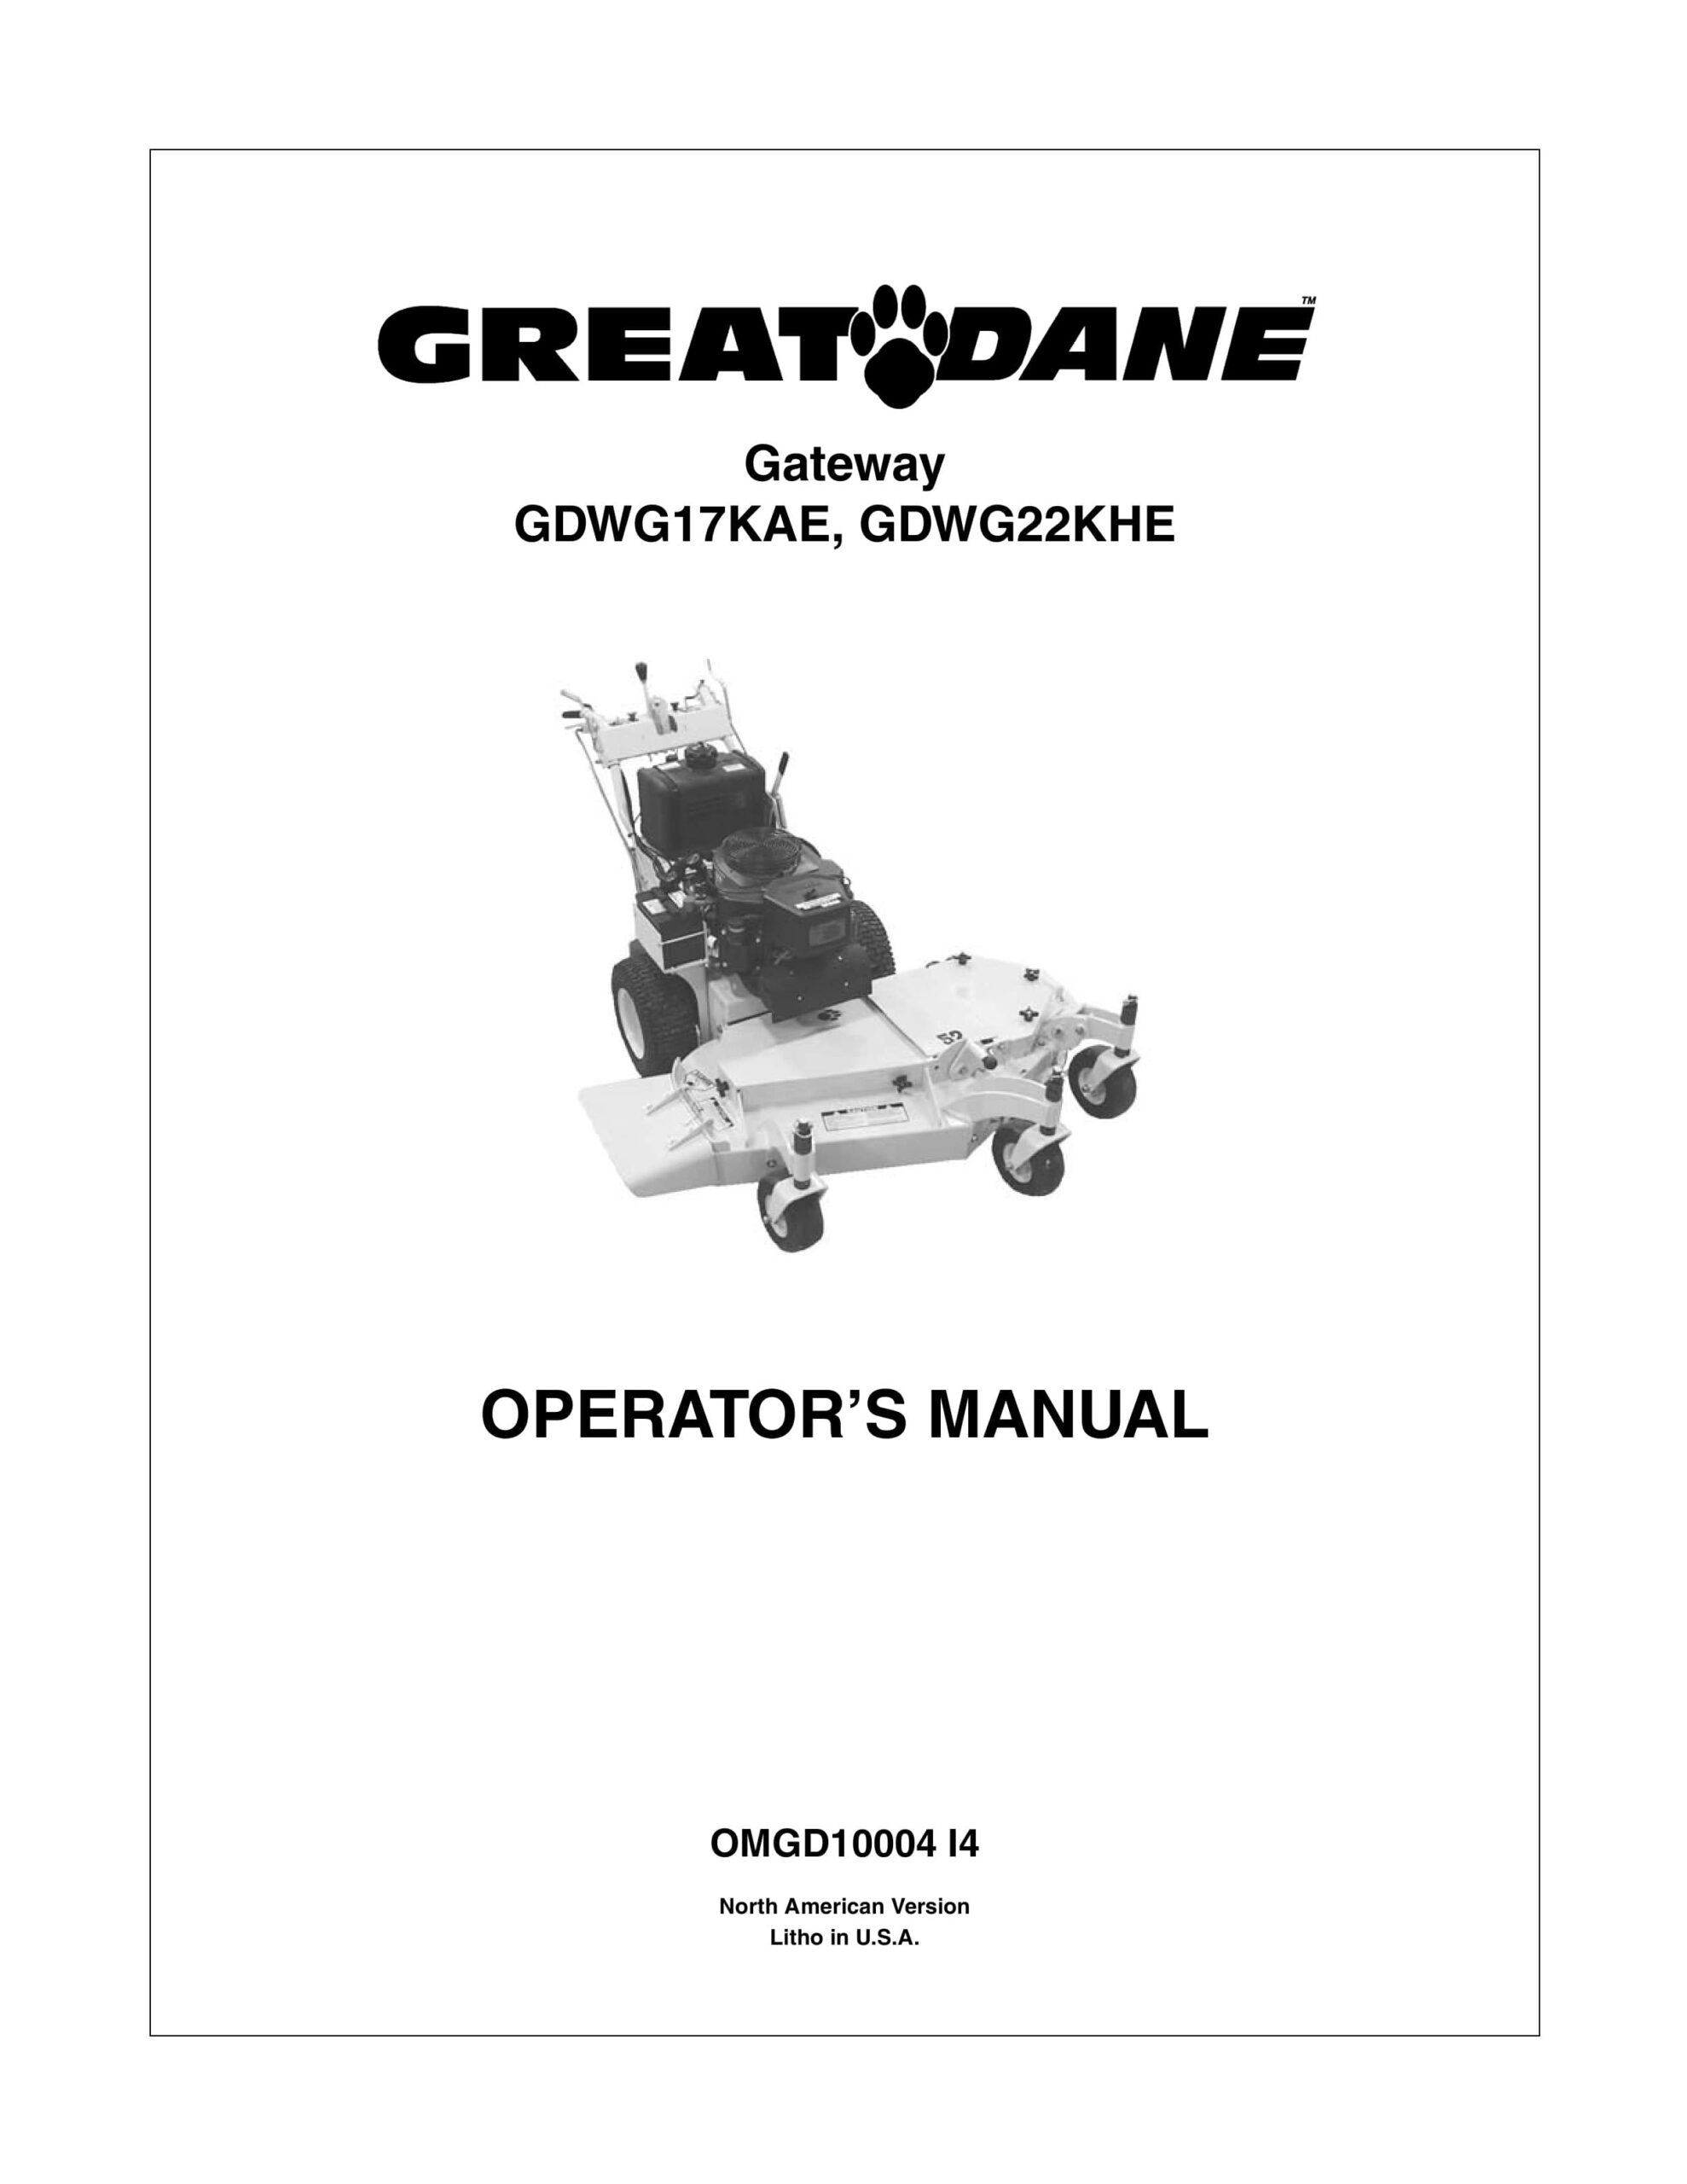 John Deere GDWG17KAE, GDWG22KHE Gateway Operator Manual OMGD10004-1